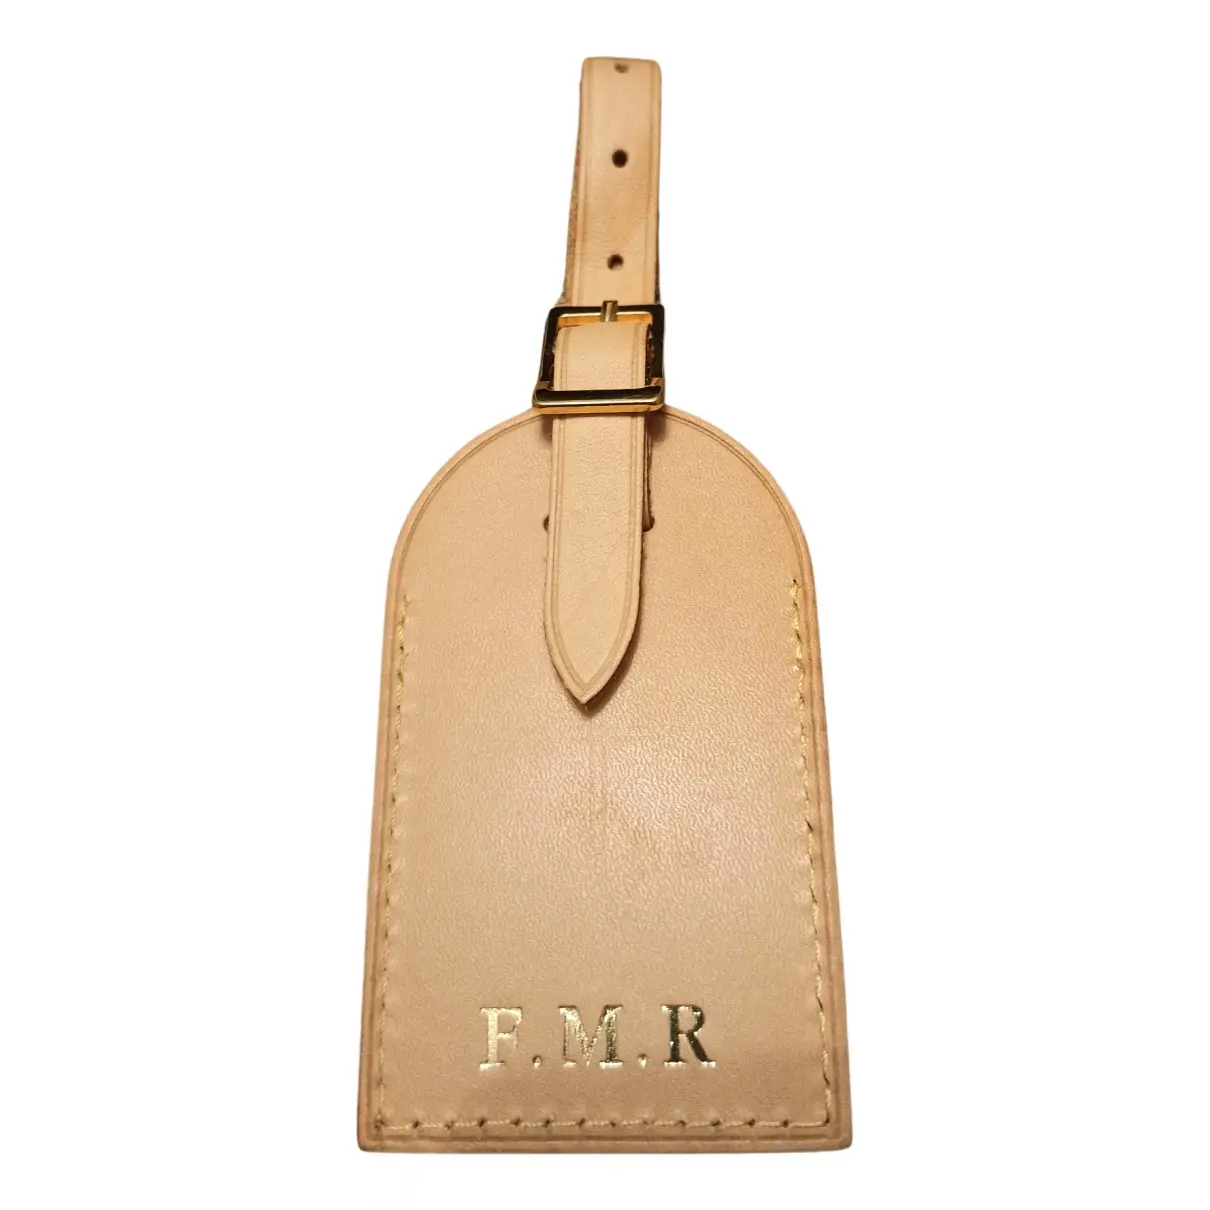 Buy Louis Vuitton Porte adresse leather purse online